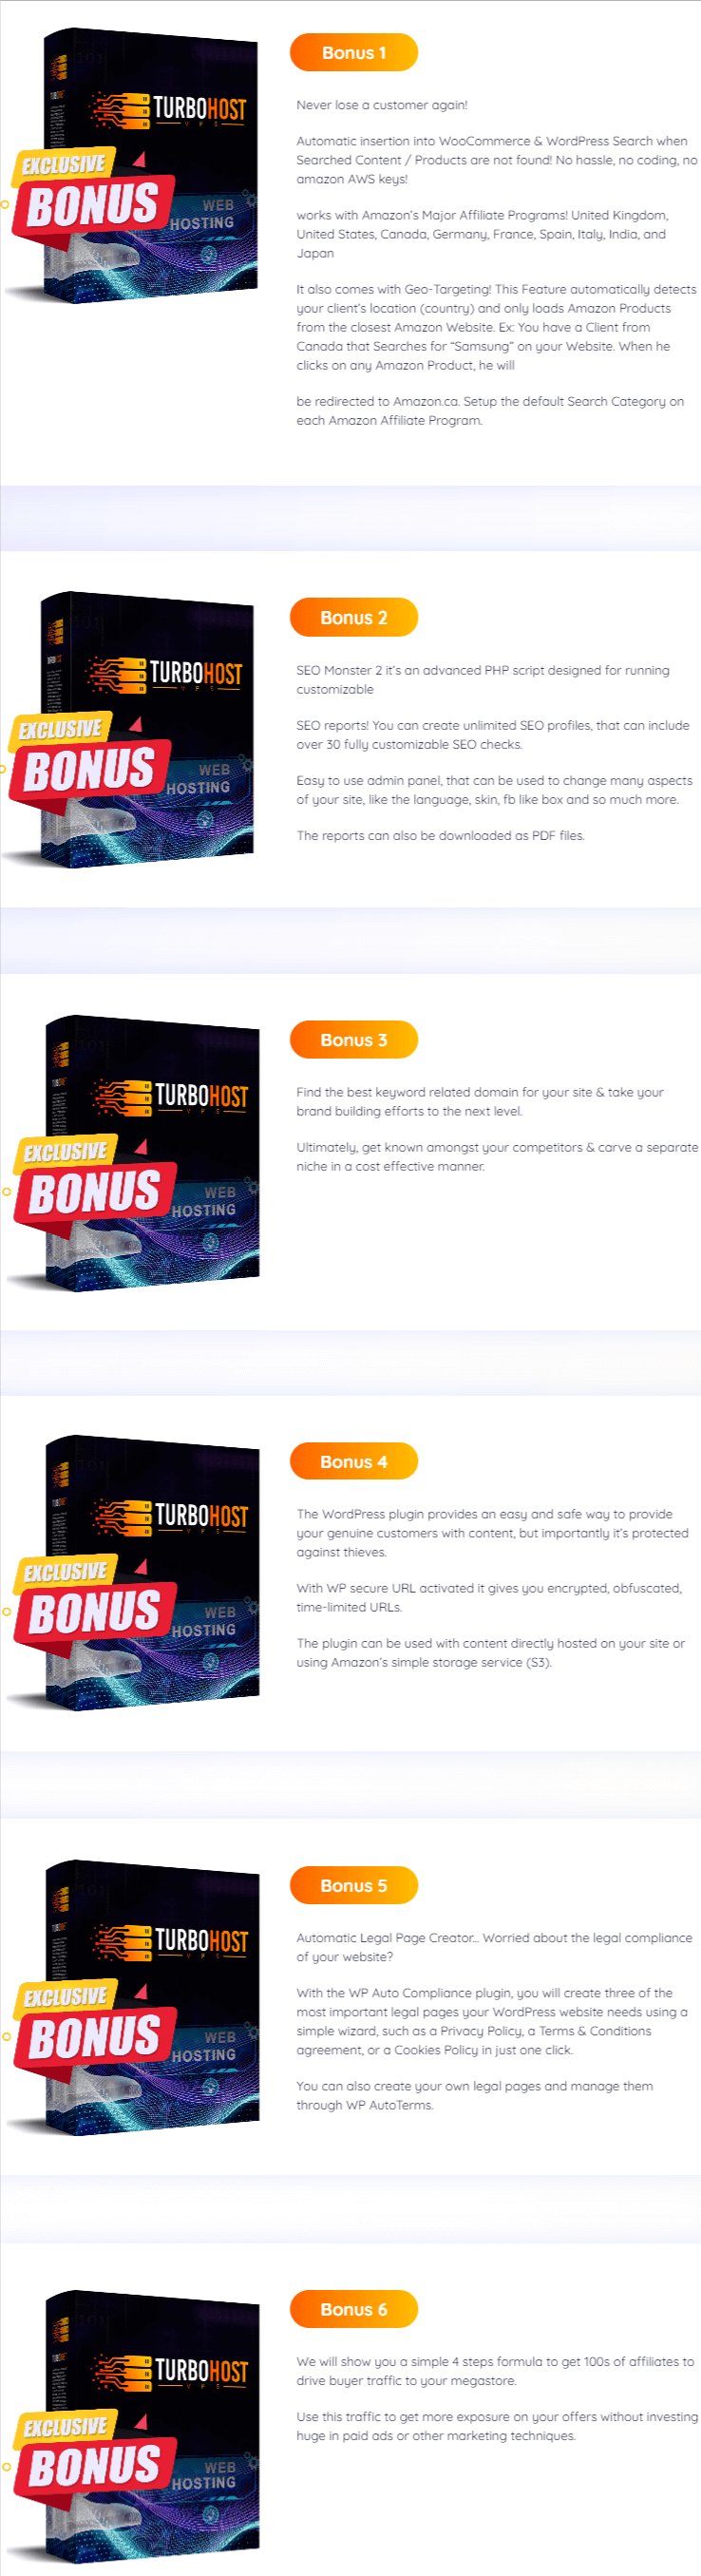 TurboHost-VPS-Bonuses.